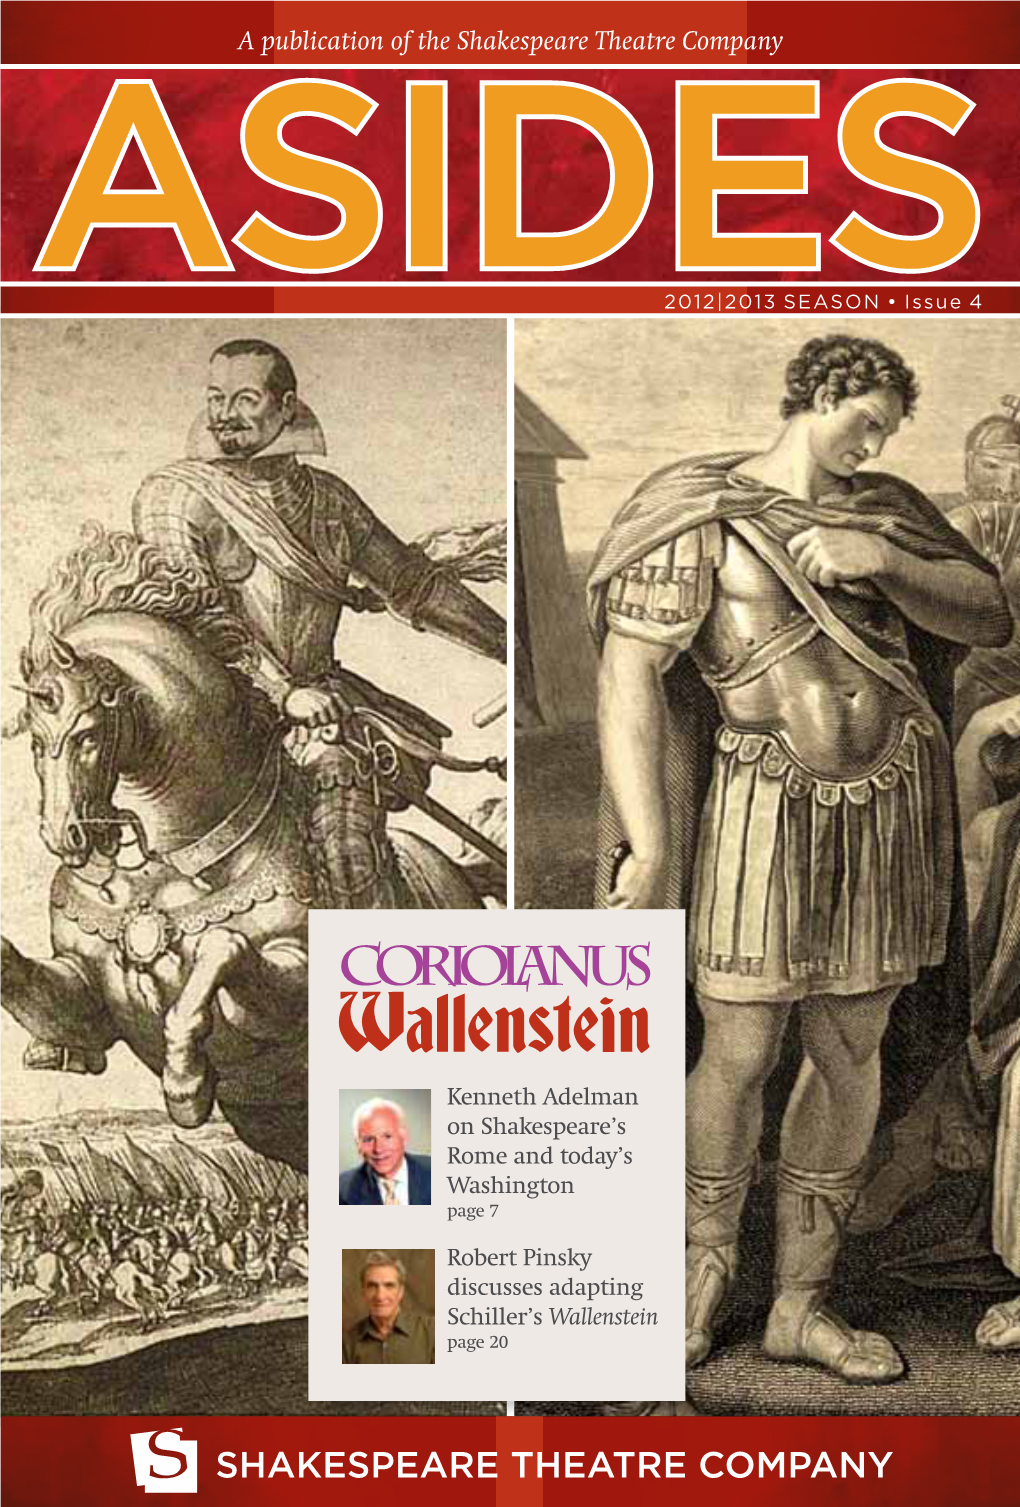 Asides Magazine